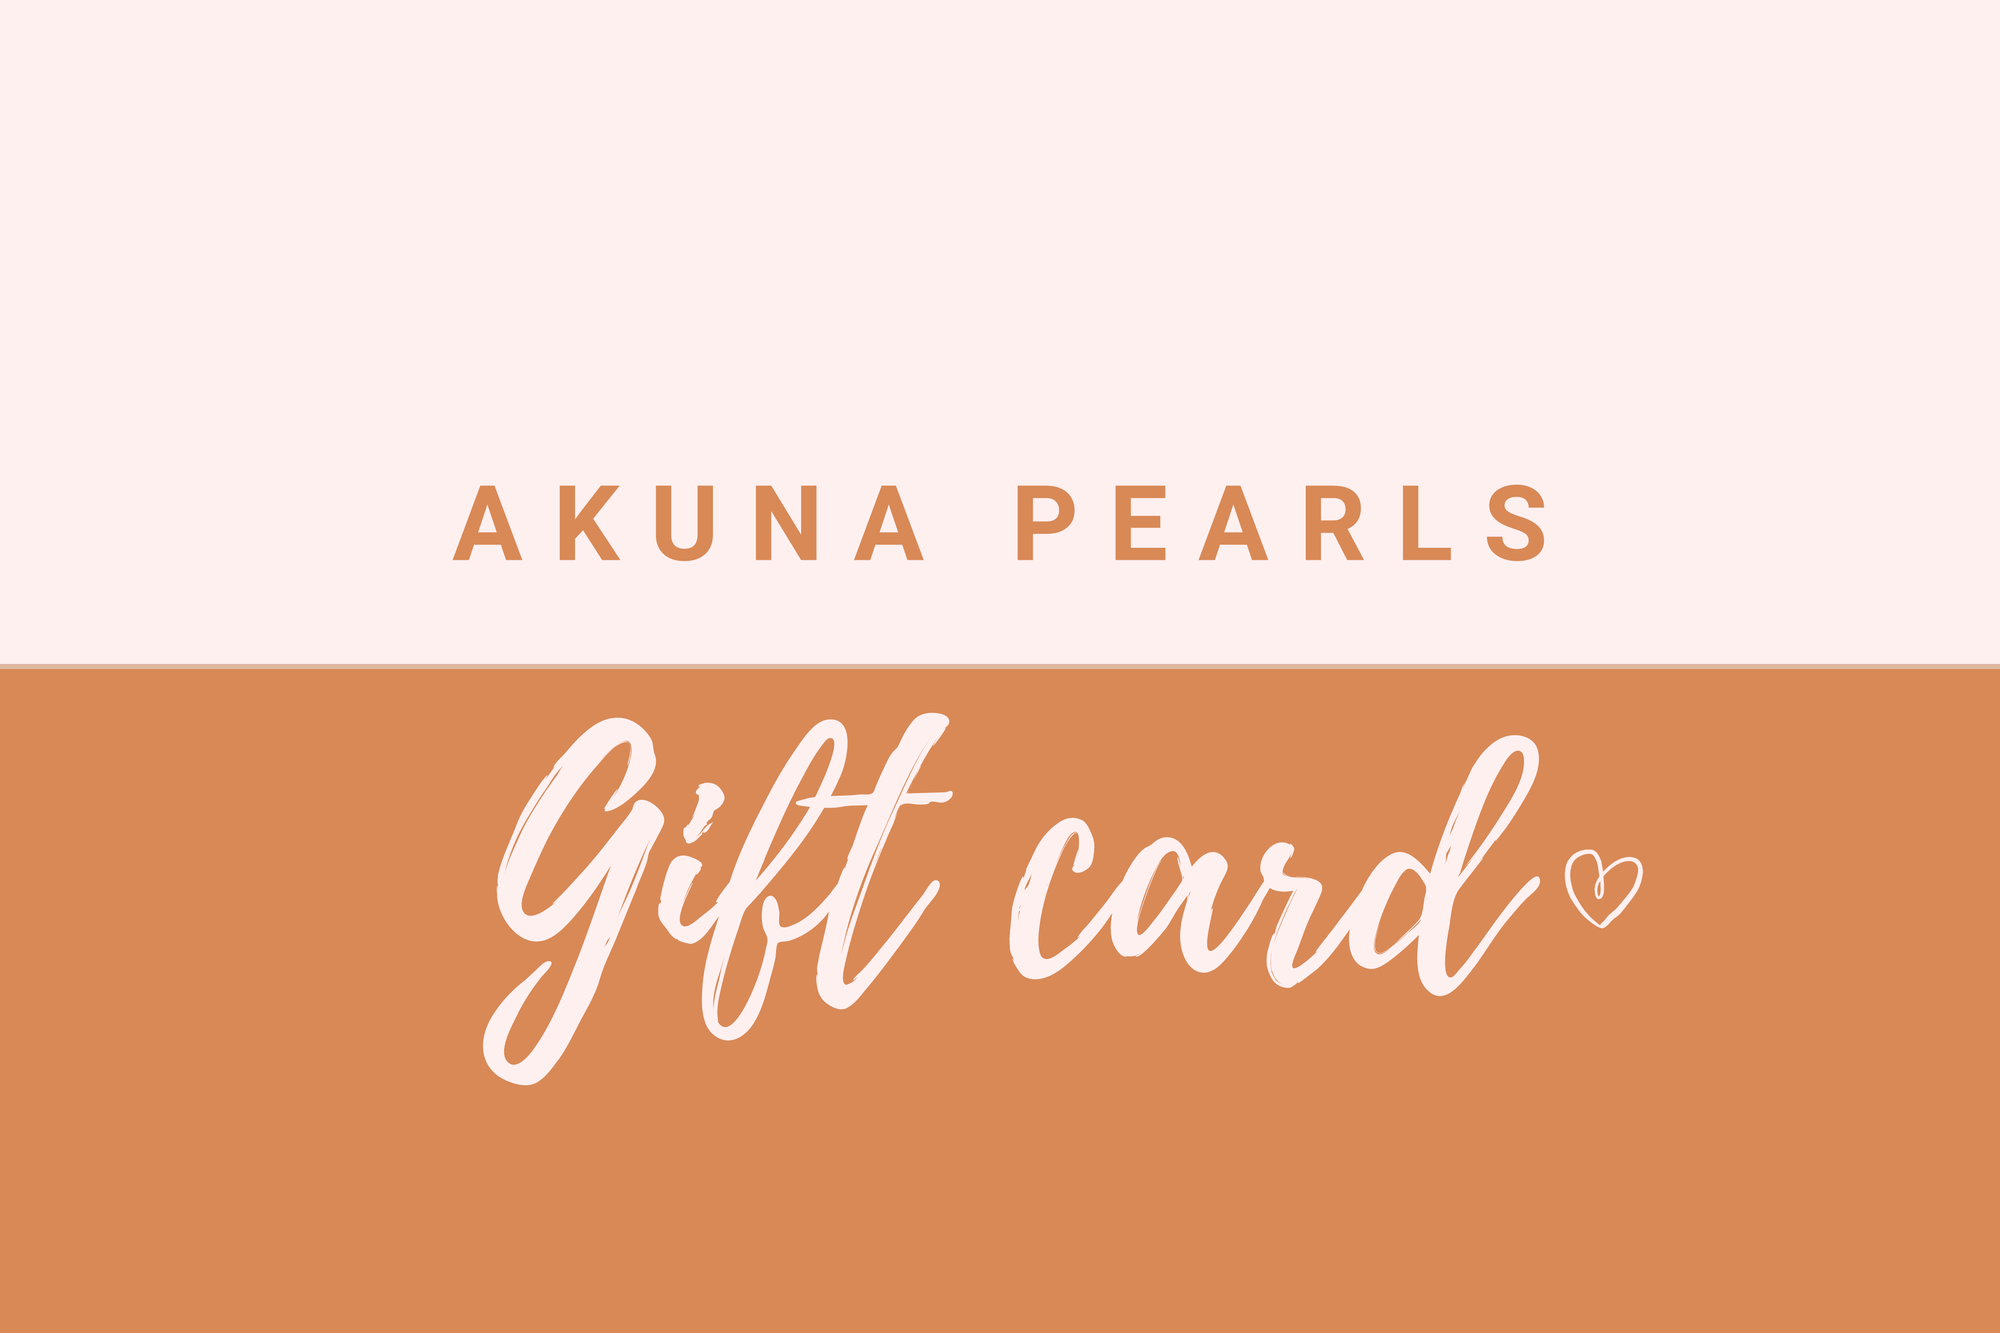 Akuna Pearls Gift Card - Akuna Pearls